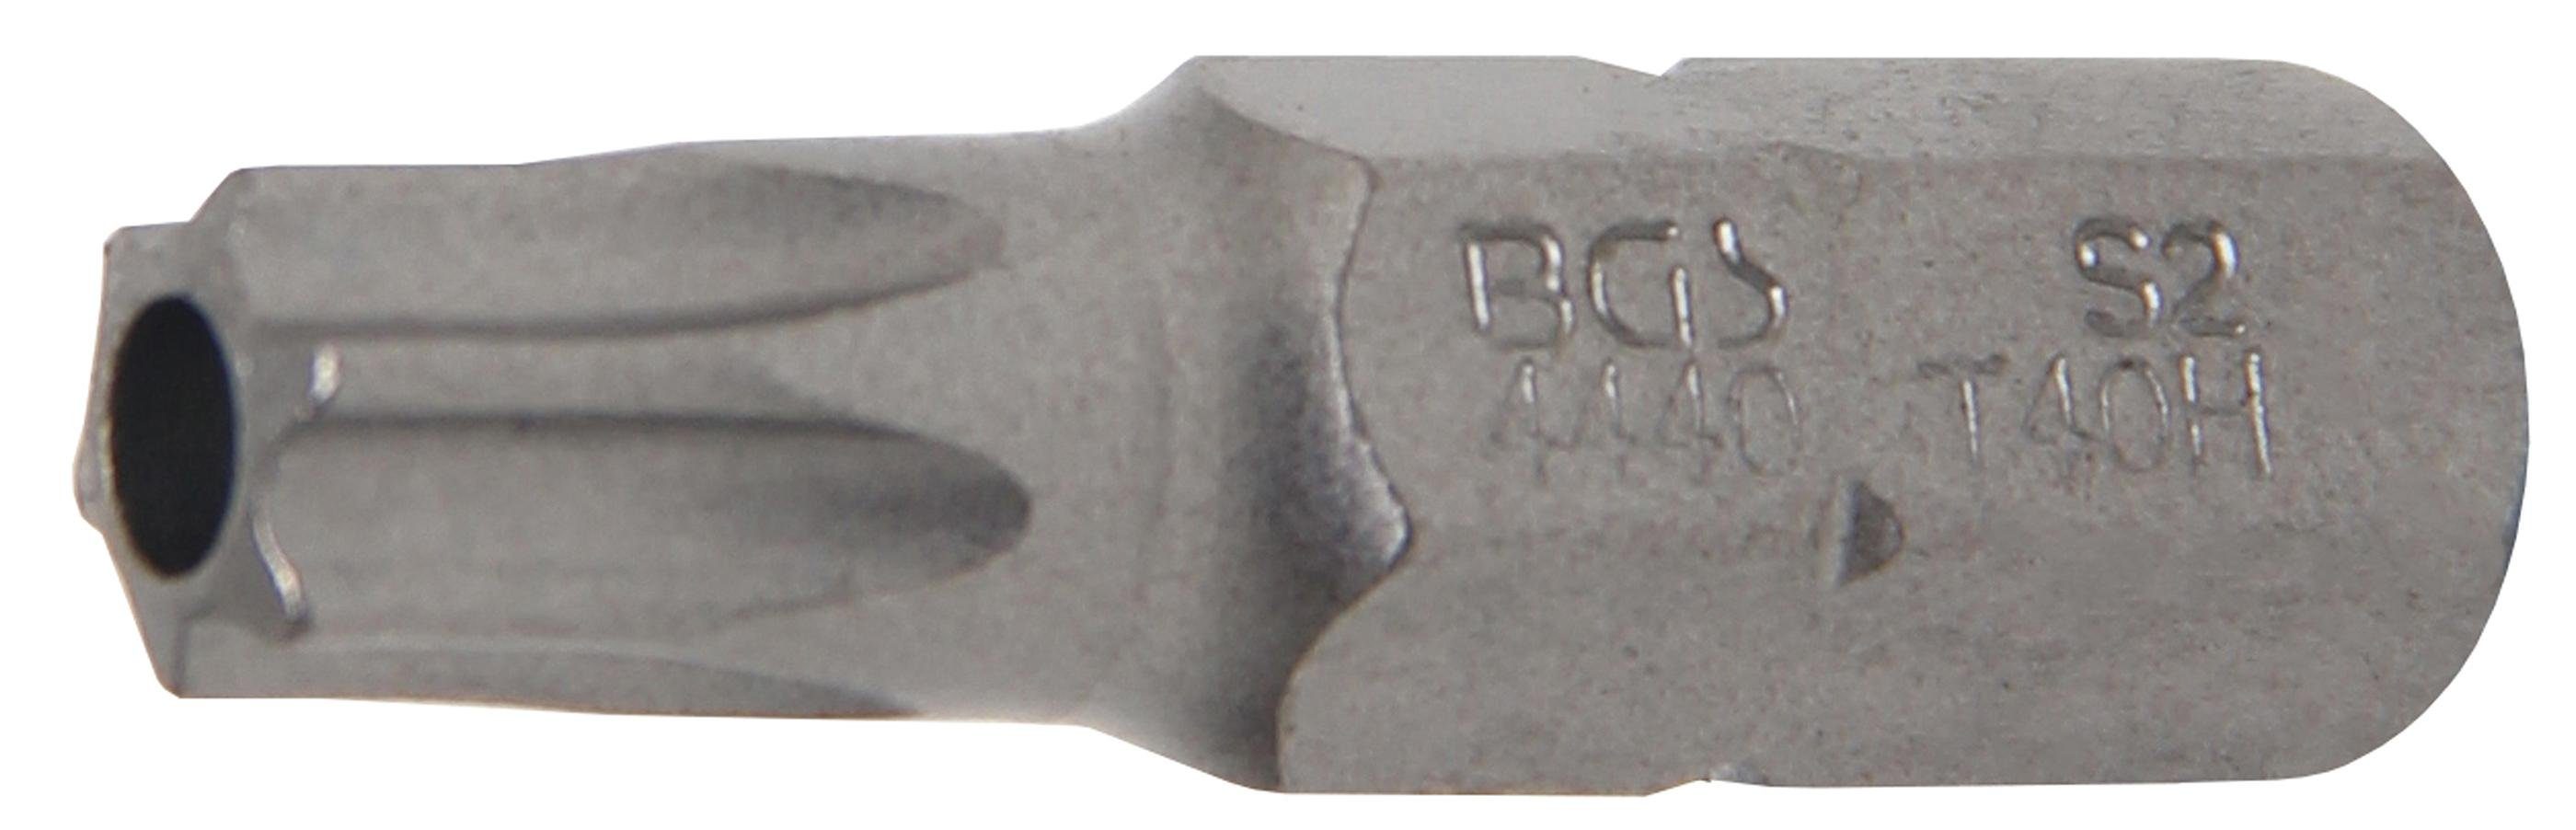 BGS technic Bit-Schraubendreher Bit, Antrieb Außensechskant 8 mm (5/16), T-Profil (für Torx) mit Bohrung T40